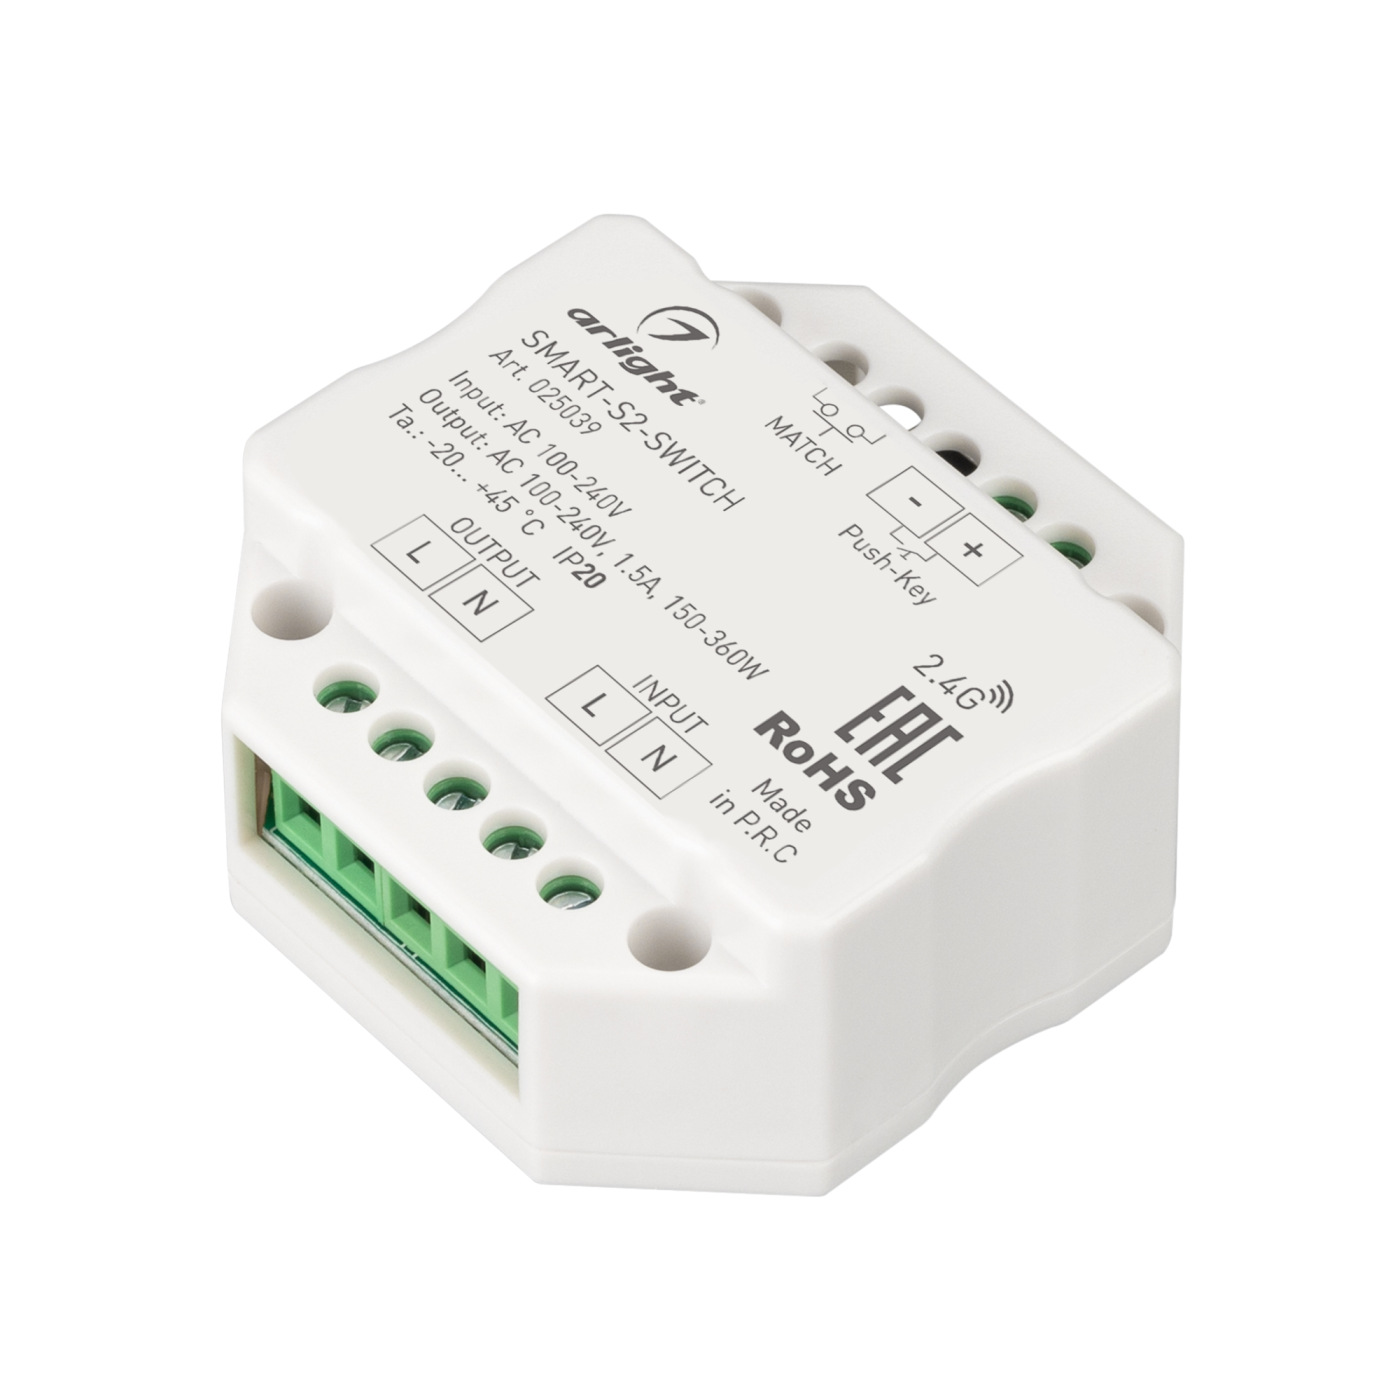 Контроллер-выключатель SMART-S2-SWITCH (230V, 1.5A, 2.4G) (Arlight, IP20 Пластик, 5 лет) ик выключатель взмаx руки 12 36в sr 8001adc n